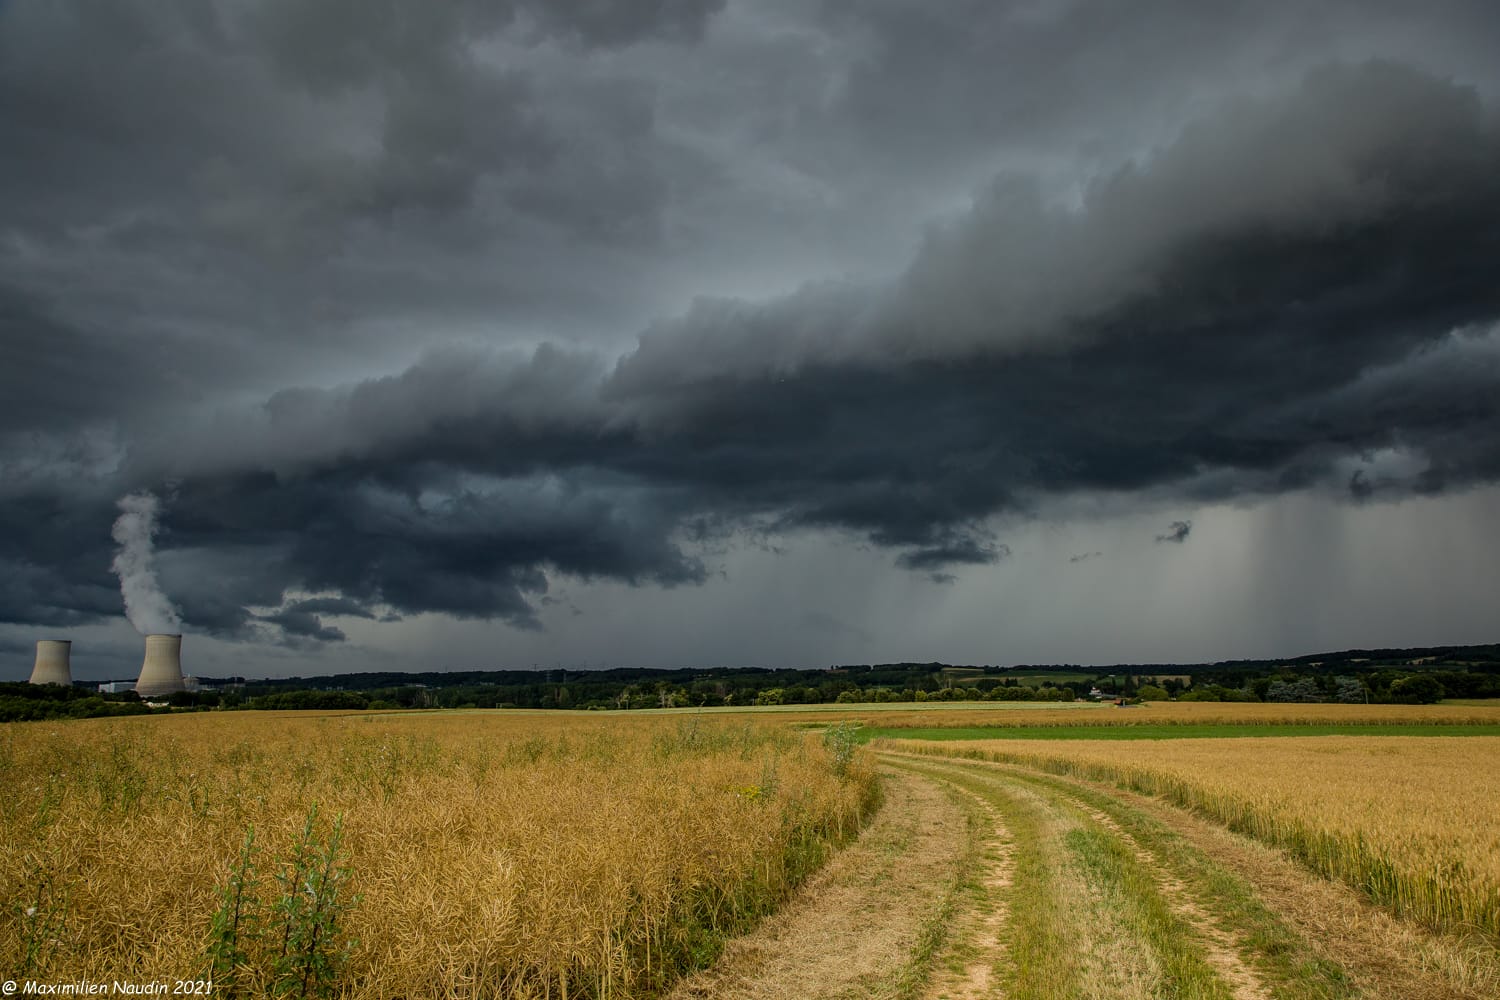 Passage d'un front orageux ce soir sur le Poitou face aux centrales de Civaux. - 20/06/2021 18:00 - Maximilien Naudin